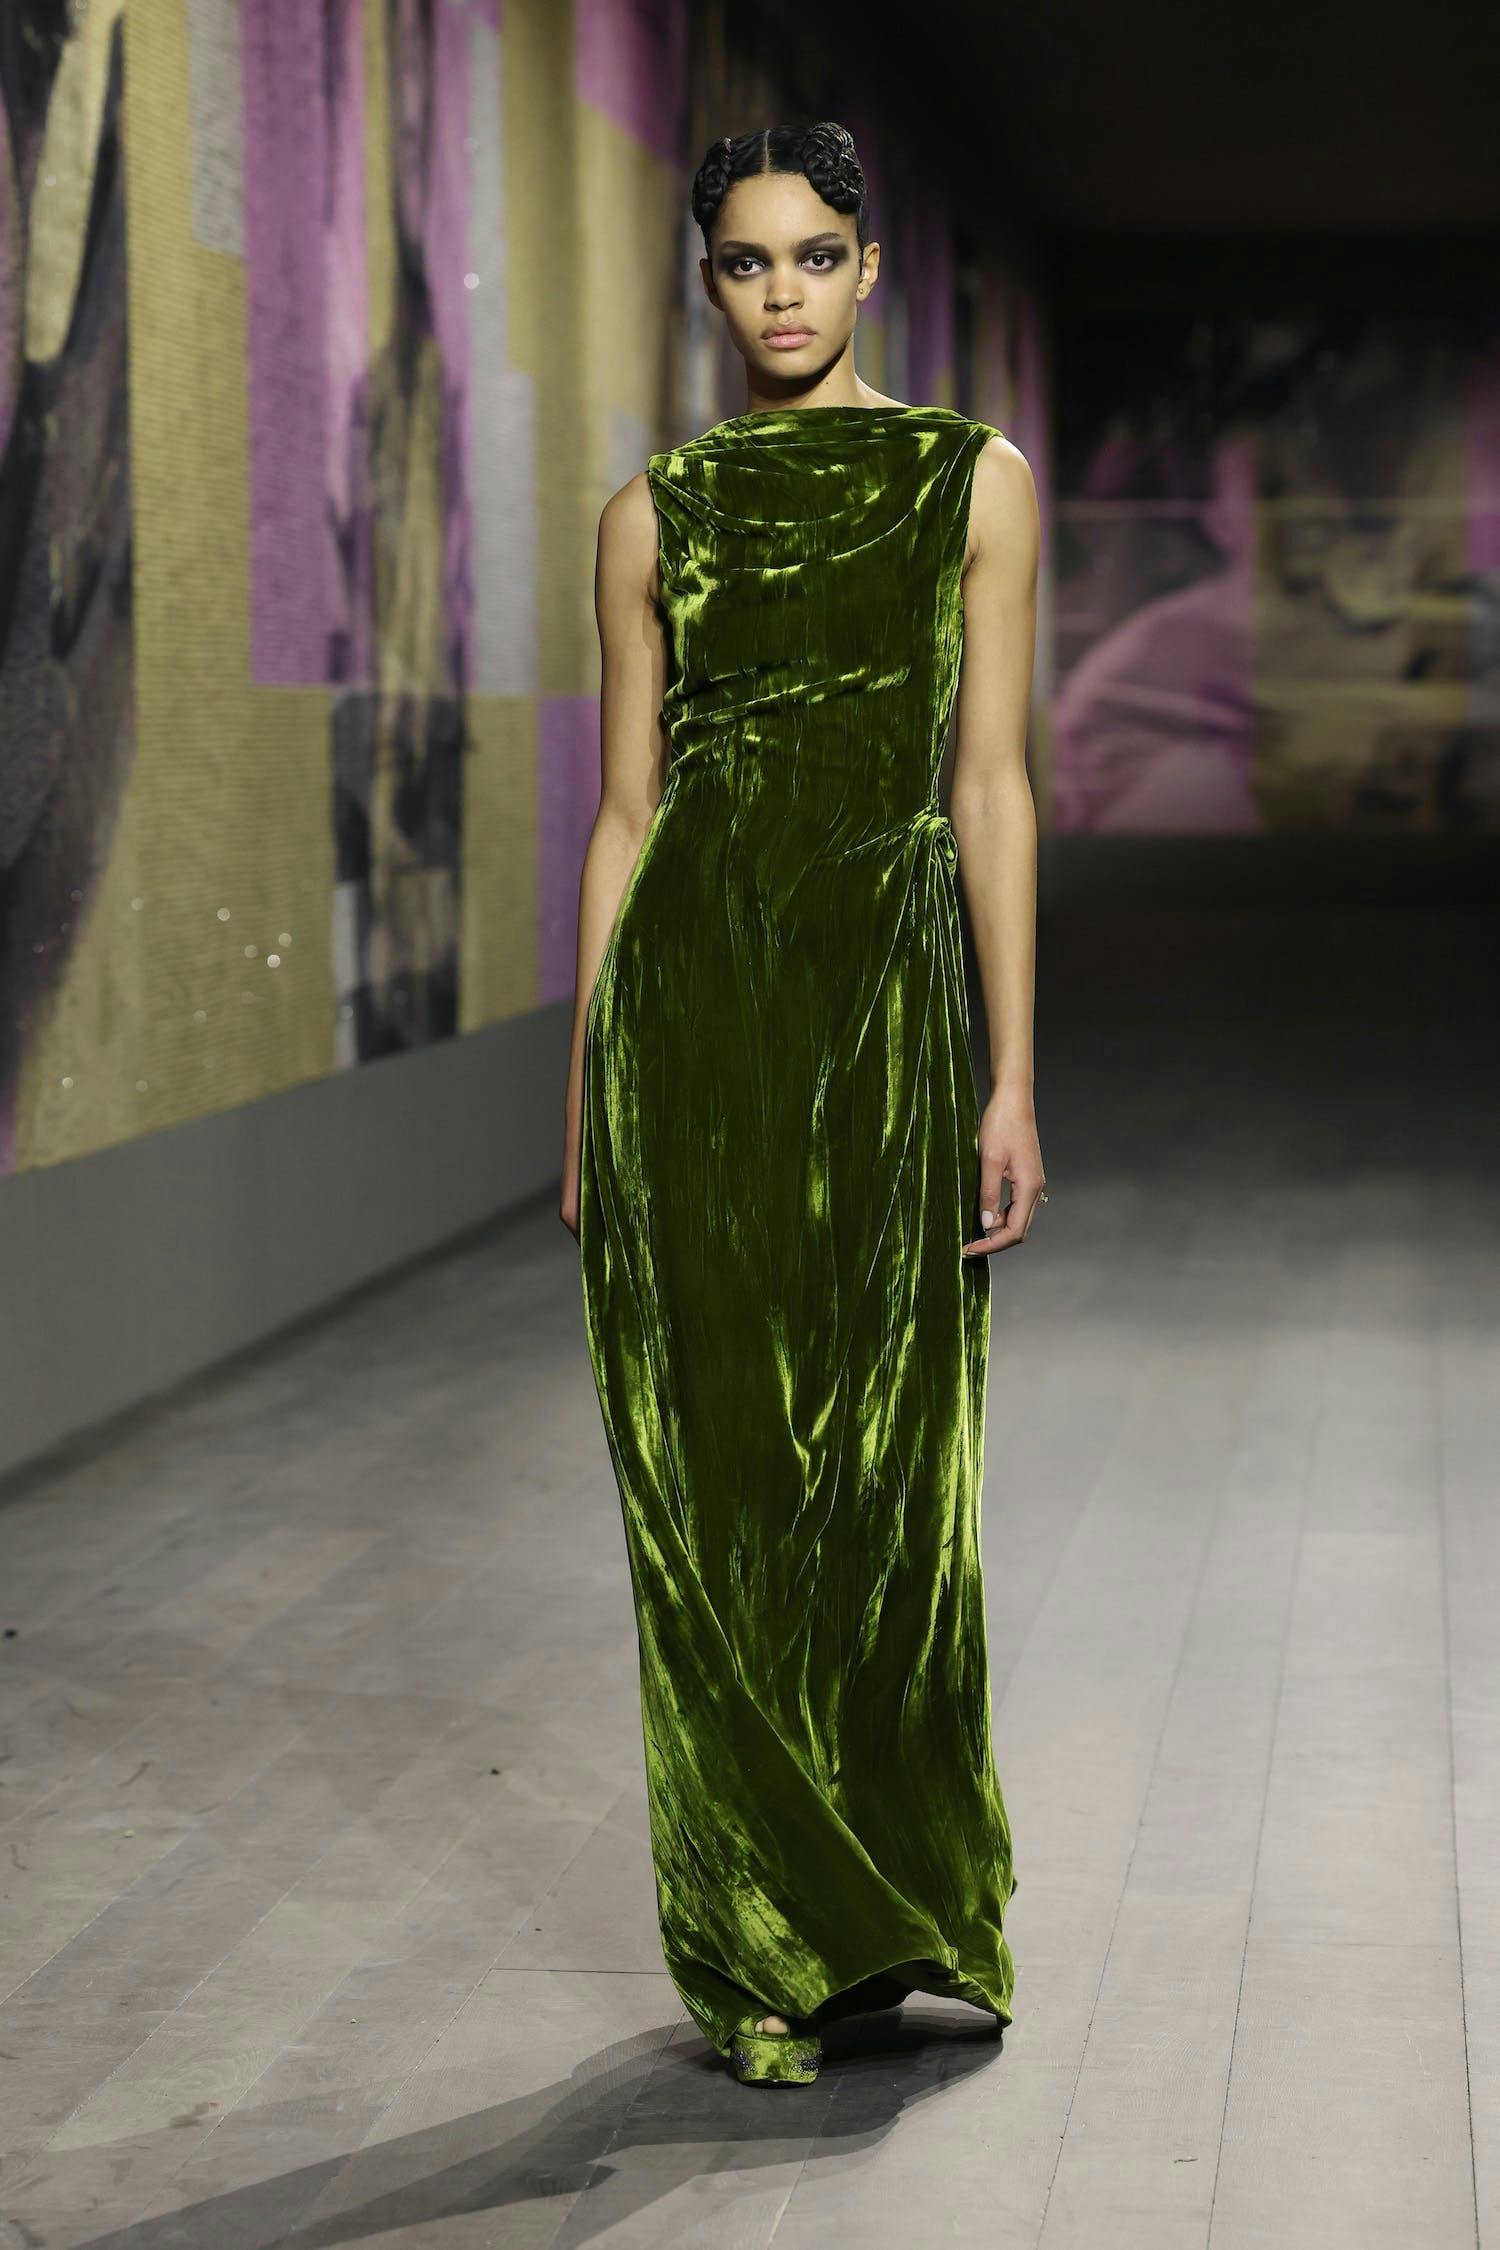 Model wears velvet green, high-neck dress.